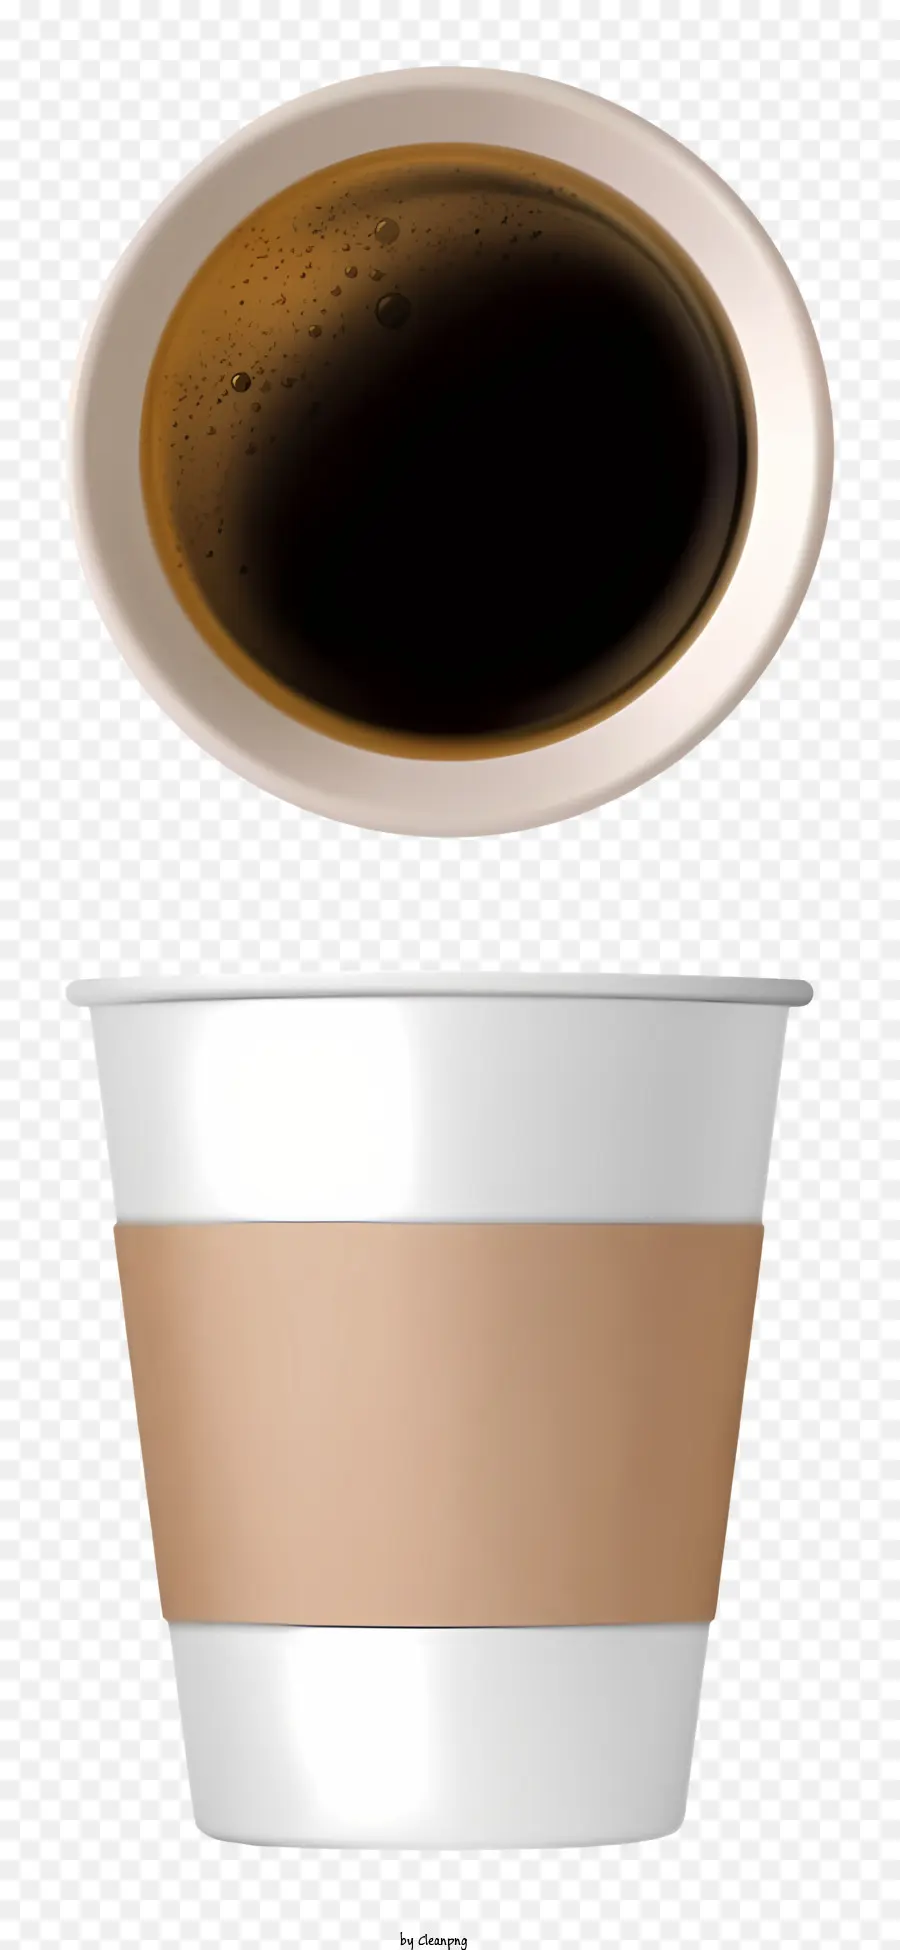 Kaffee - Kaffeetasse mit leerer brauner Flüssigkeit im Inneren